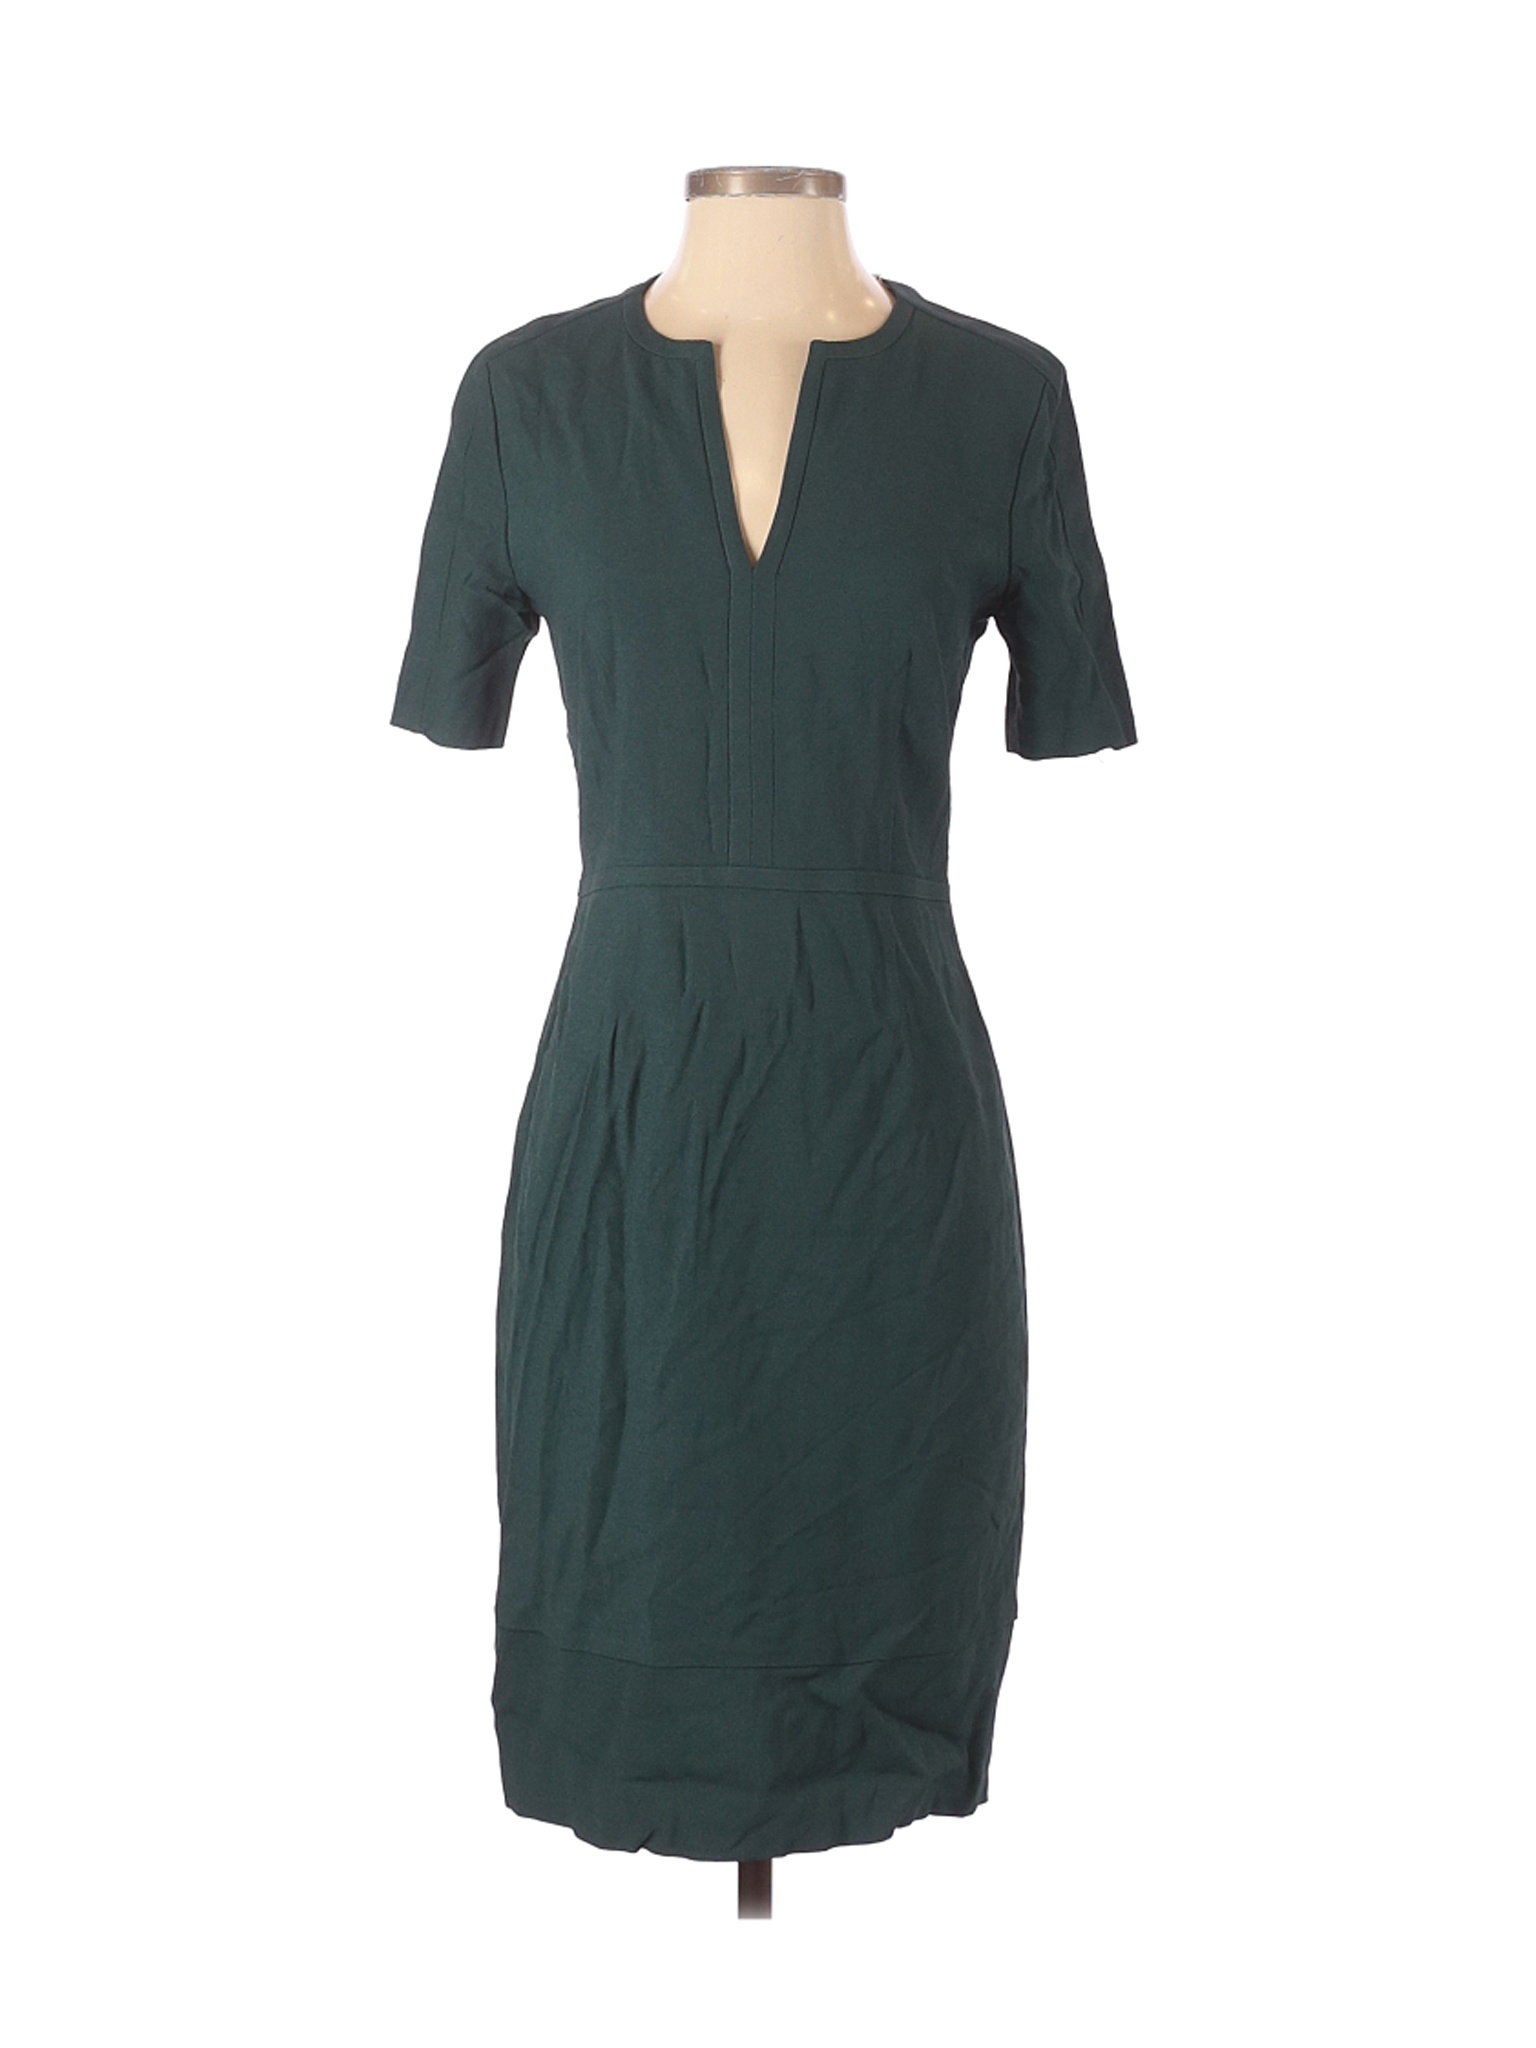 NWT BOSS by HUGO BOSS Women Green Casual Dress 2 | eBay